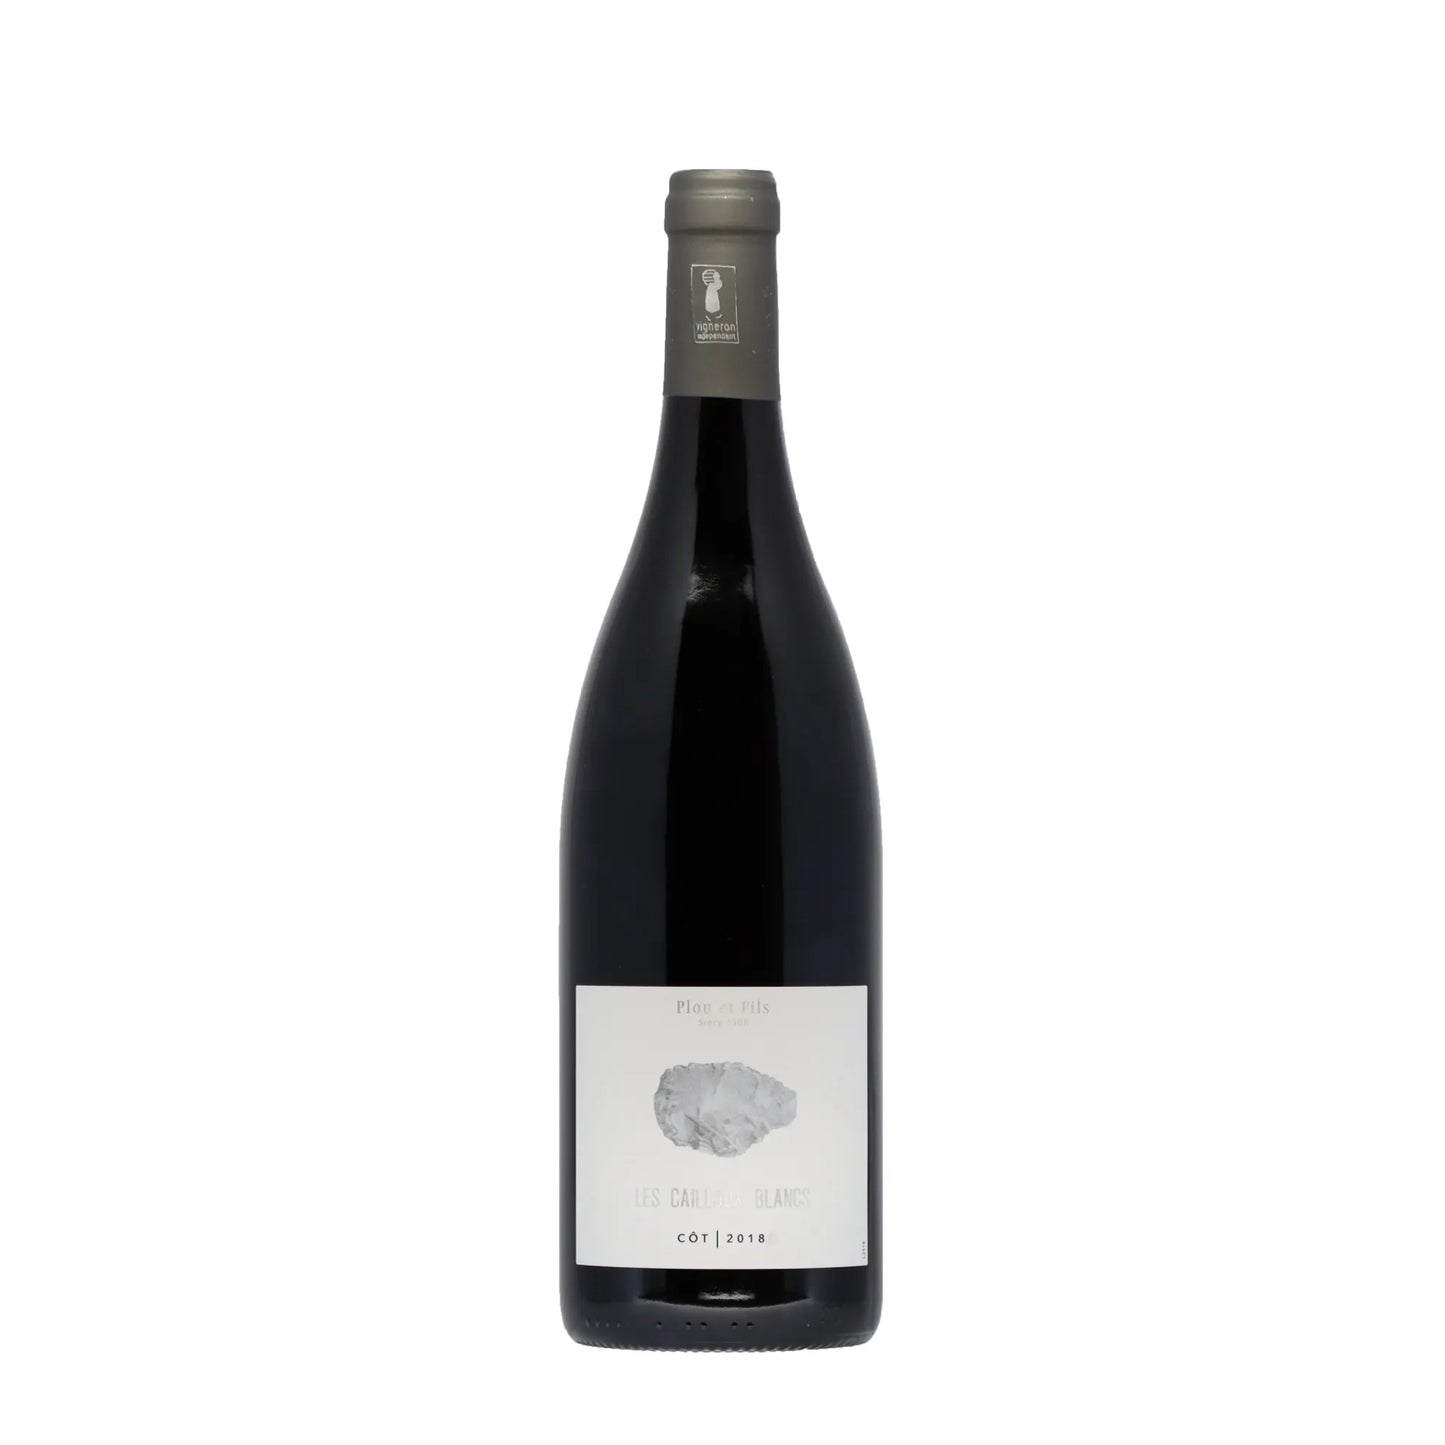 Les Cailloux Blancs Côt 2018 Domaine Plou & Fils Frankreich - Rotwein - Wein